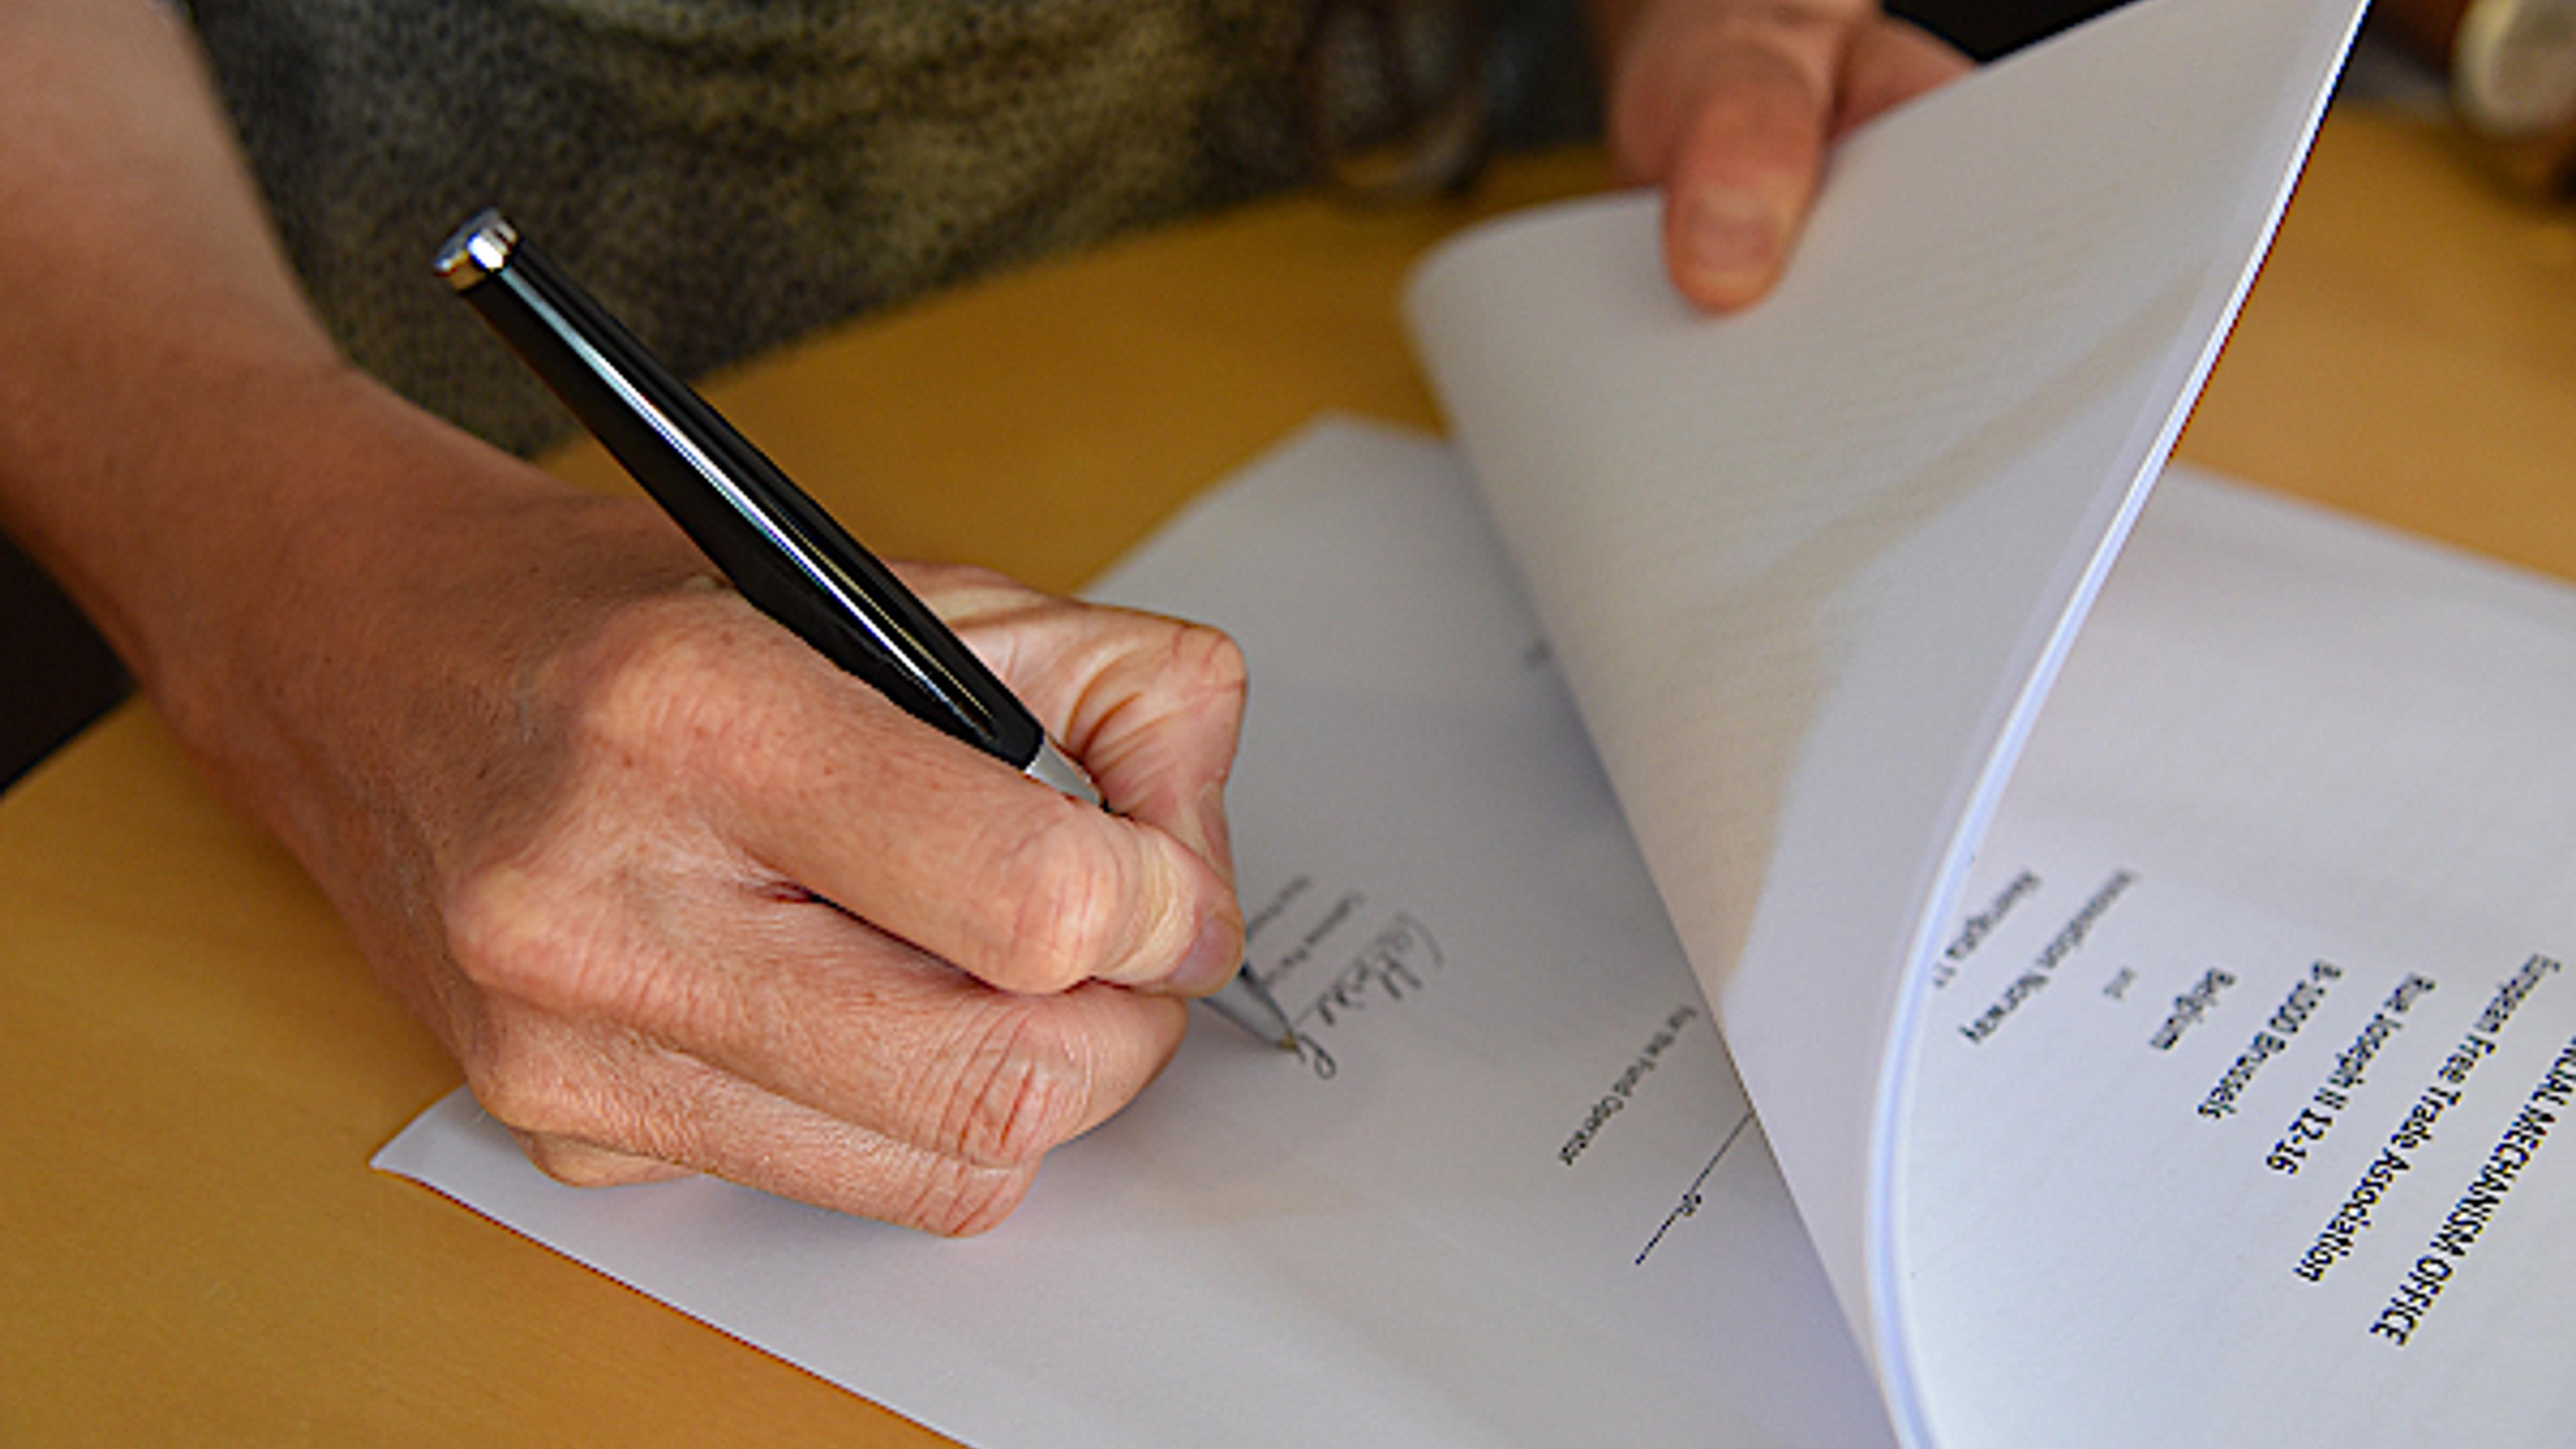 En hånd som holder en penn og signerer papirer